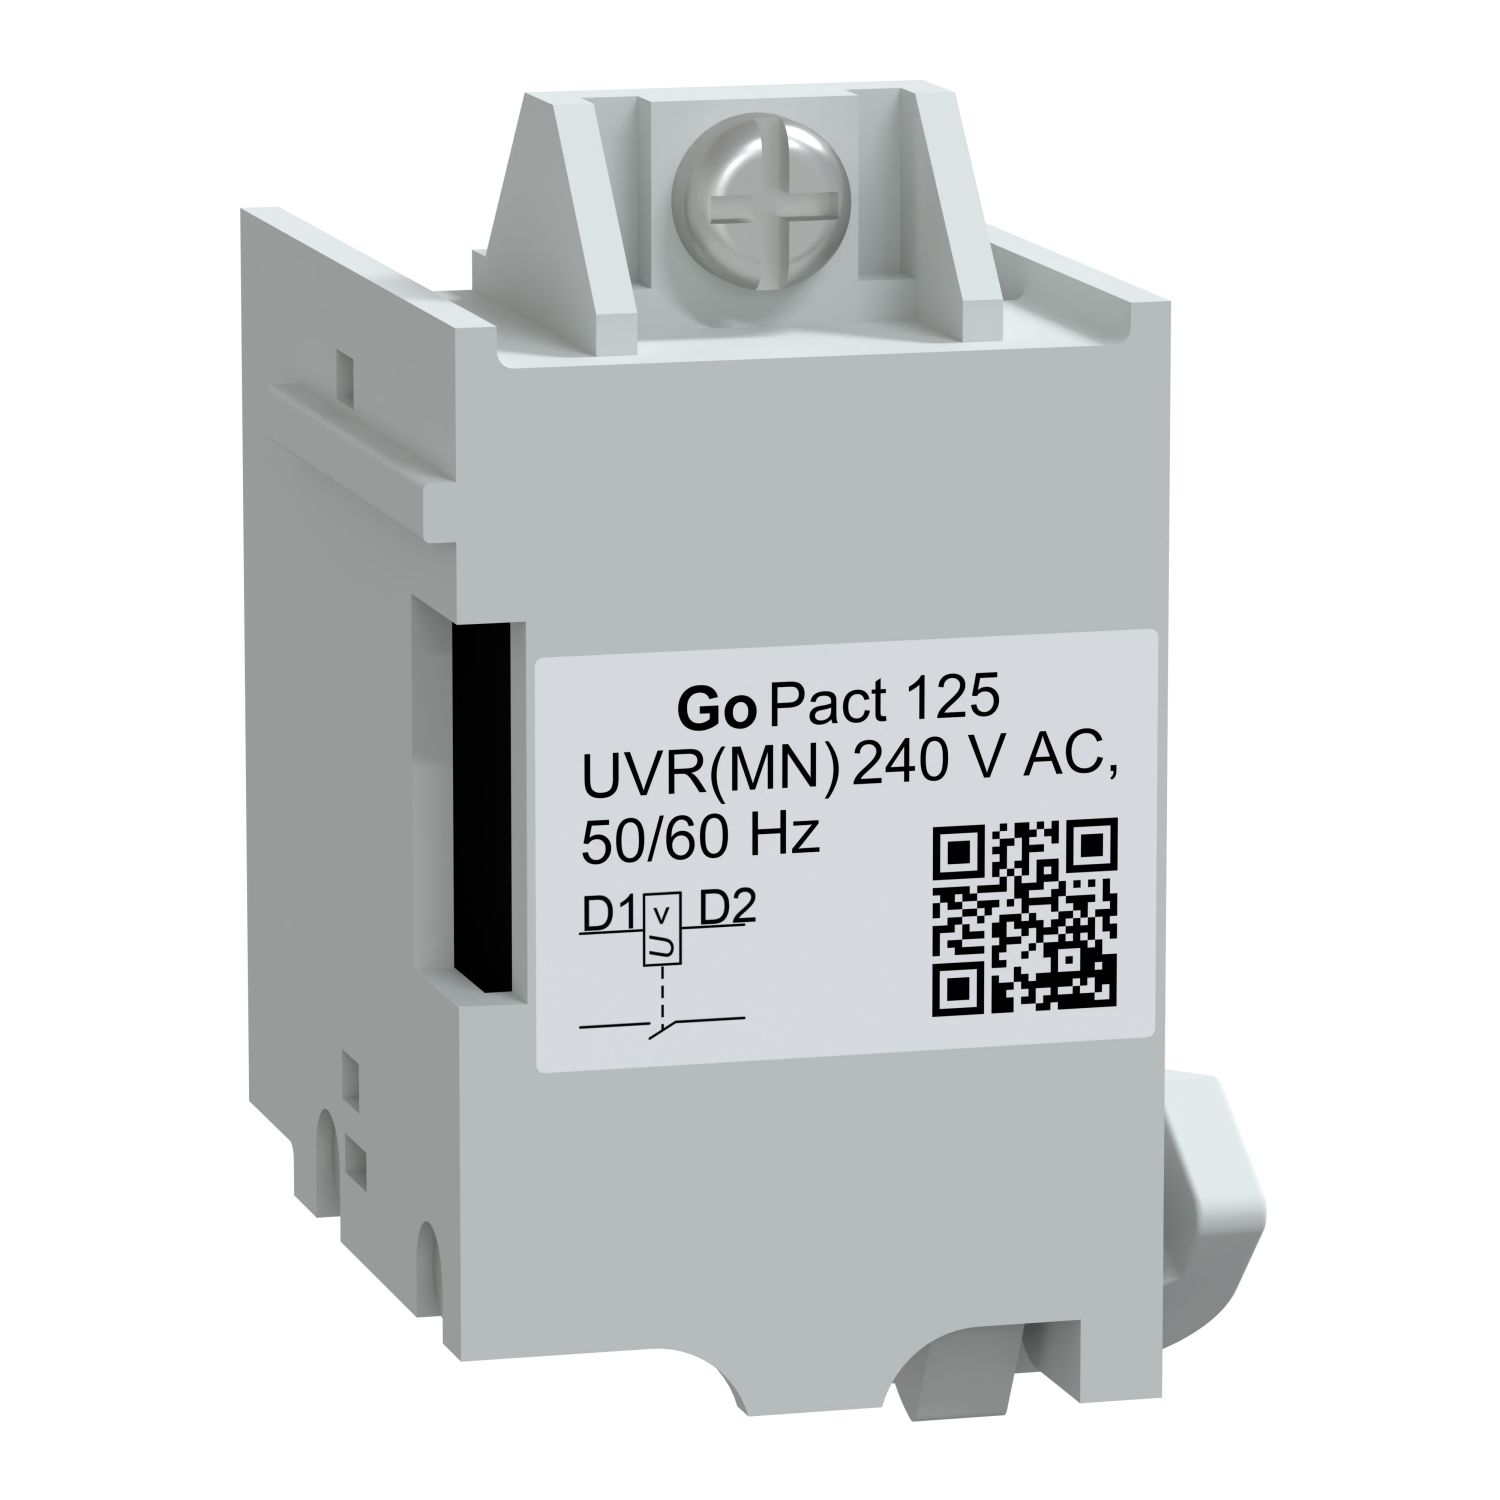 G12UVR230AC MN undervoltage release, GoPact MCCB 125, 240VAC 50/60Hz